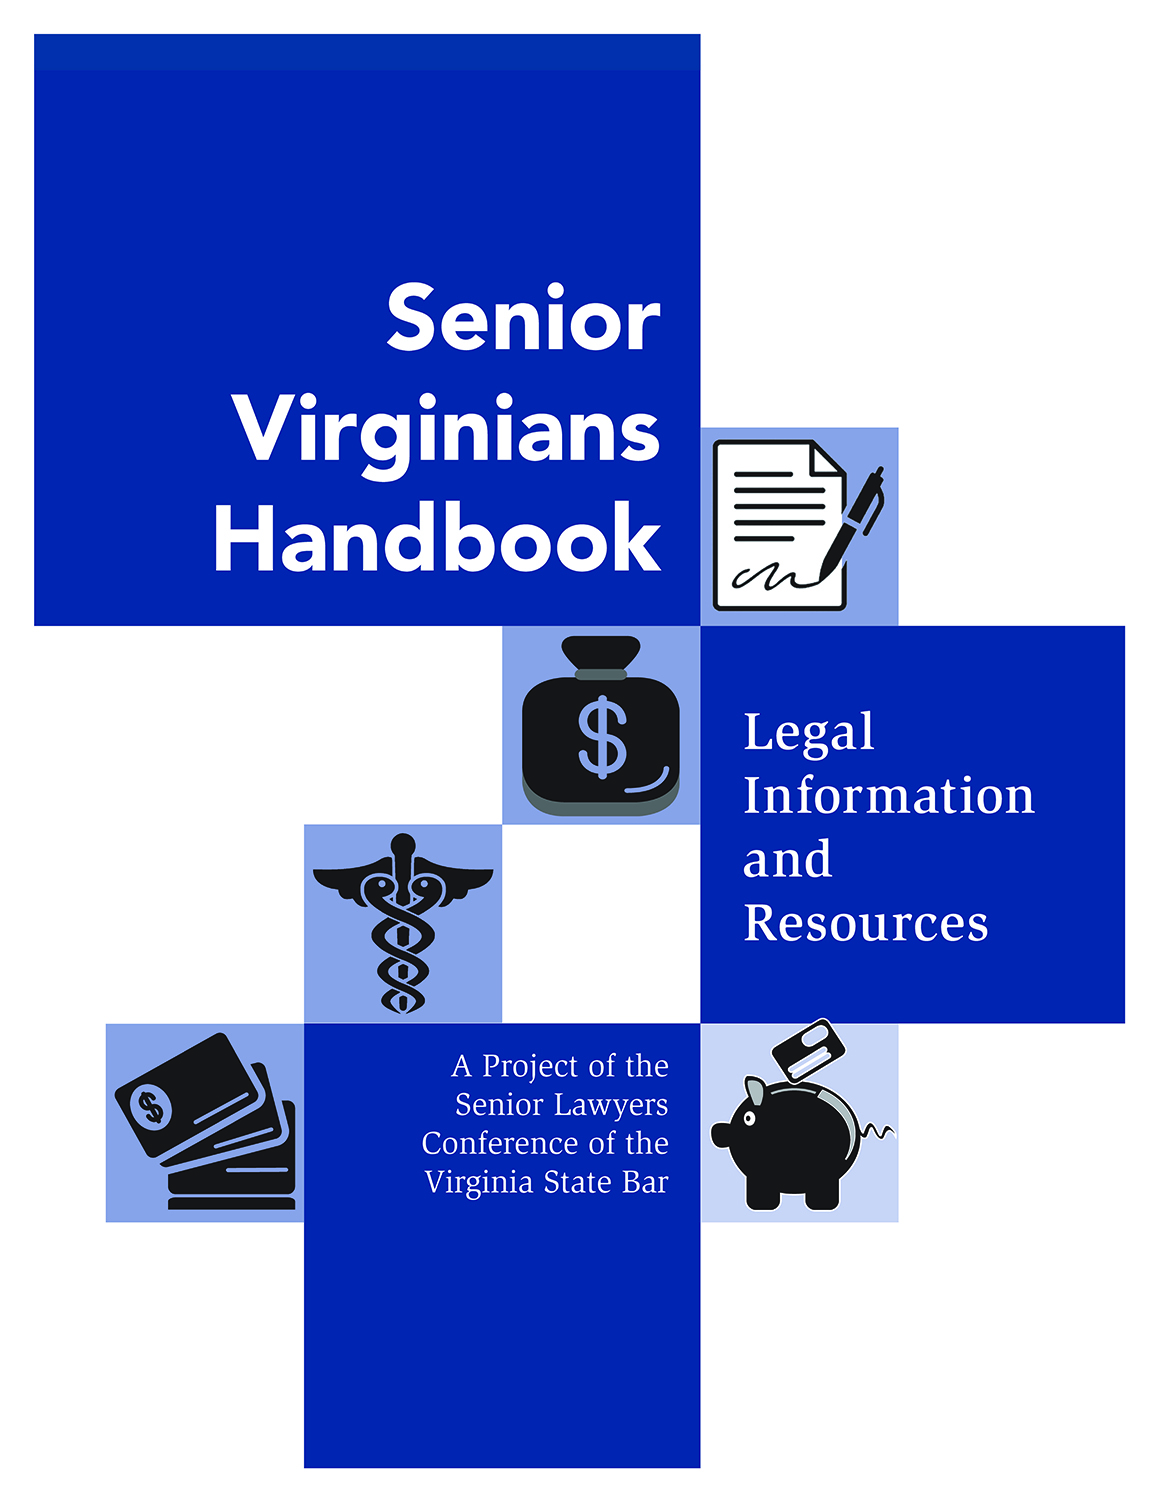 Senior Virginians handbook cover